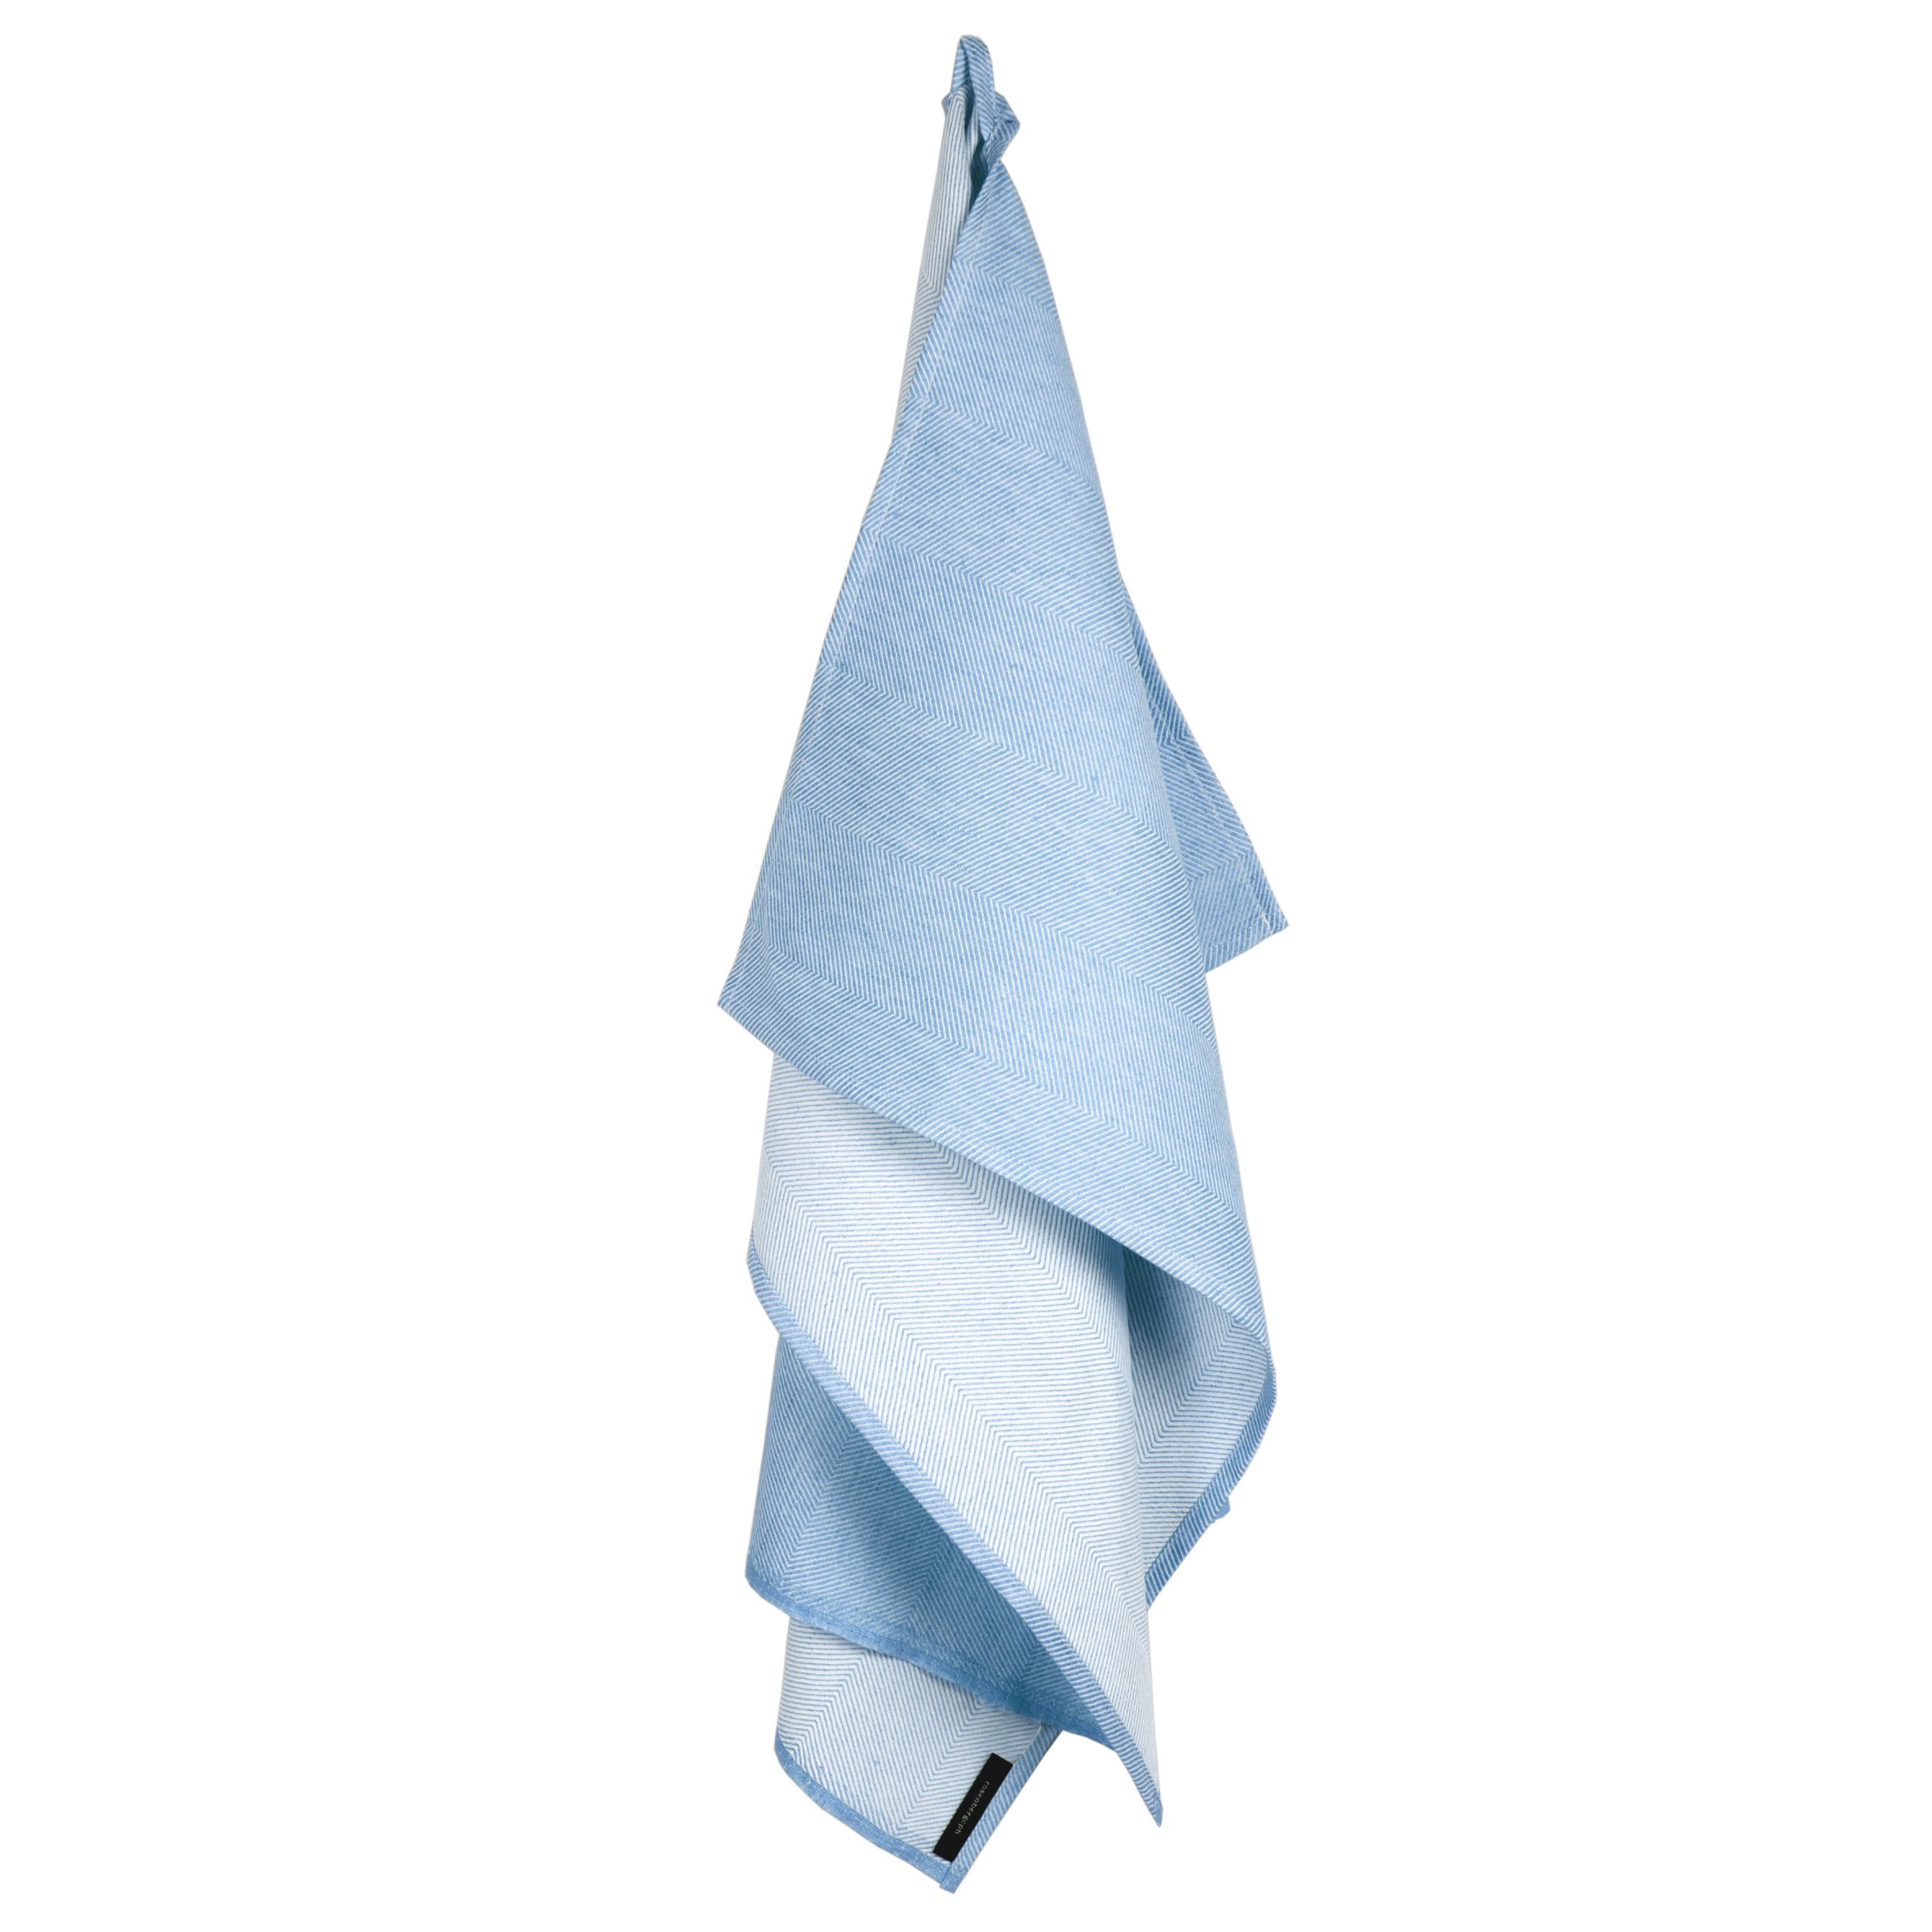 Towel, sky blue, linen/cotton, design by Anne Rosenberg, RosenbergCph